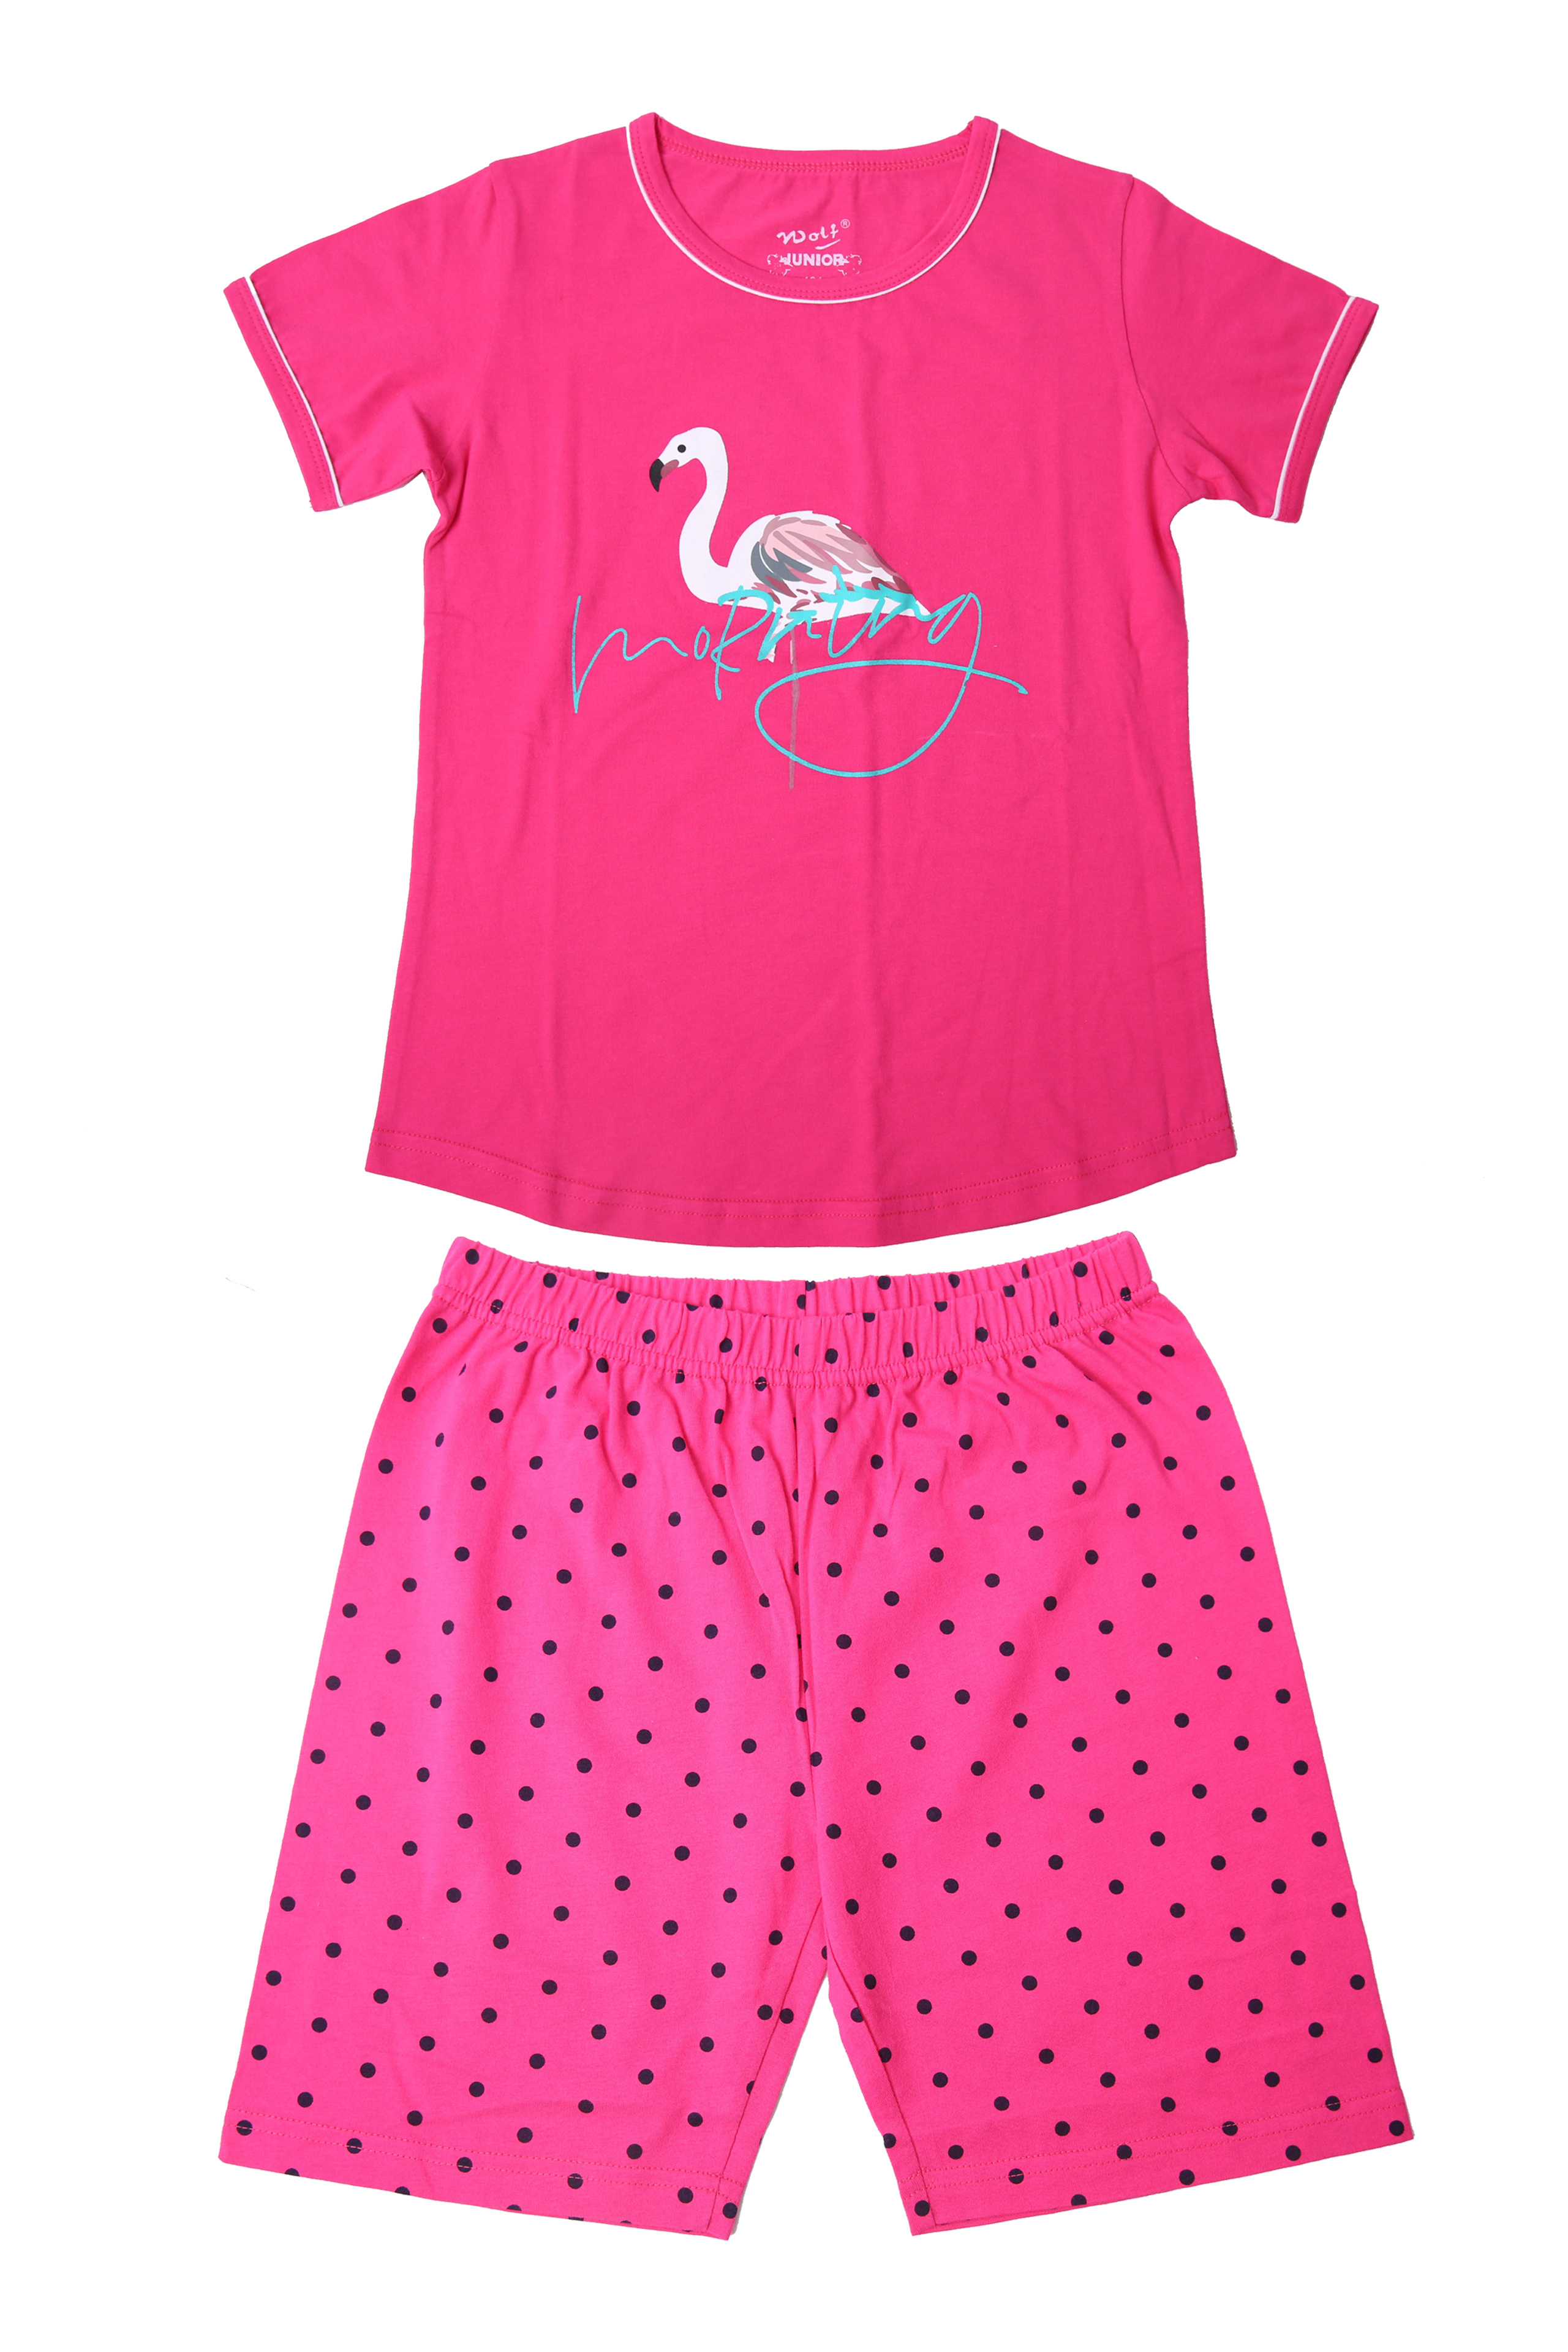 Dívčí pyžamo - Wolf S2165, růžová sytě Barva: Růžová sytě, Velikost: 158